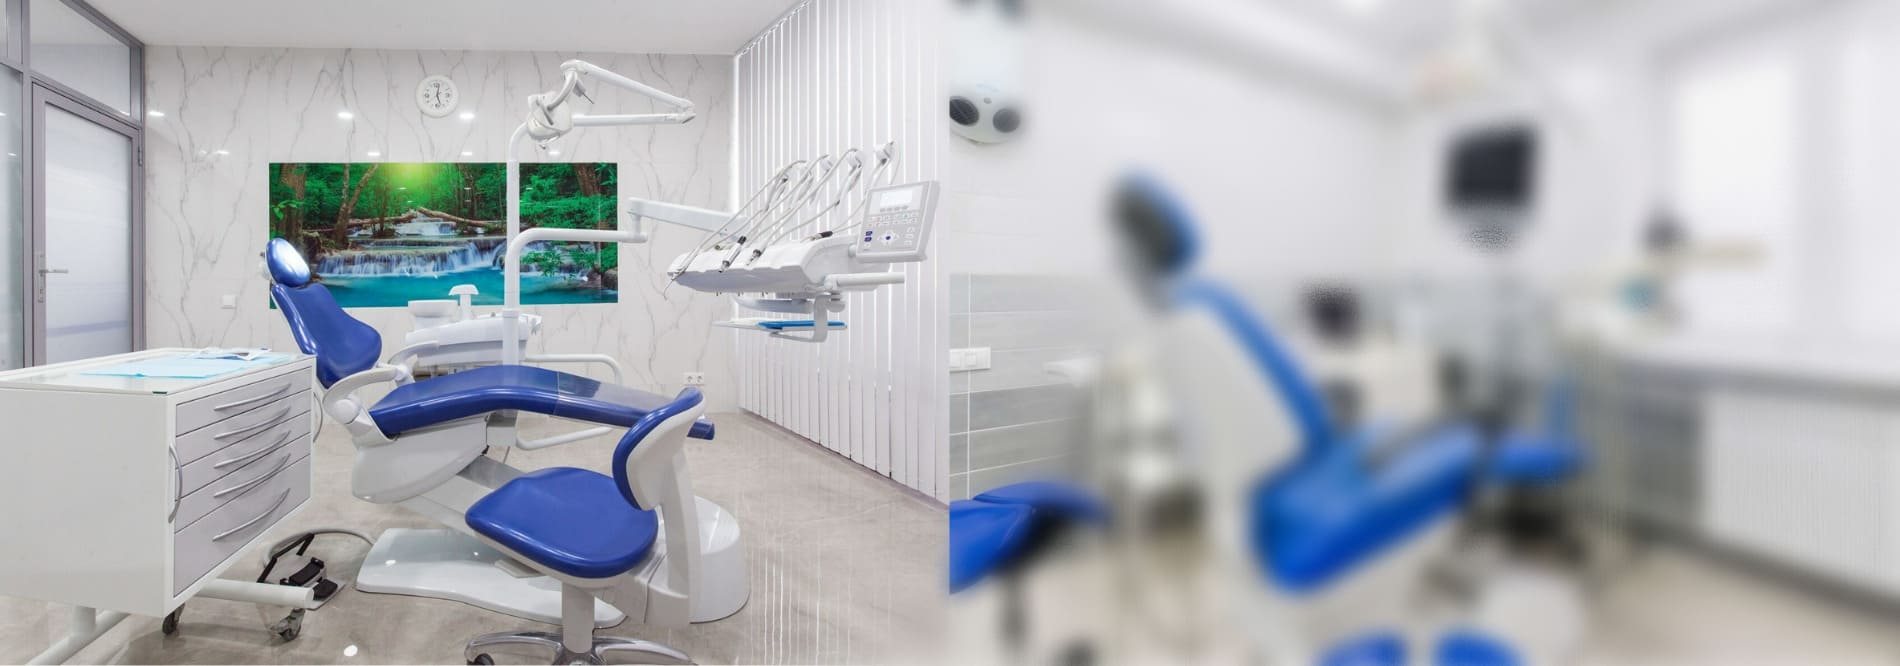 Проектирование стоматологии в Краснодаре Севастополь